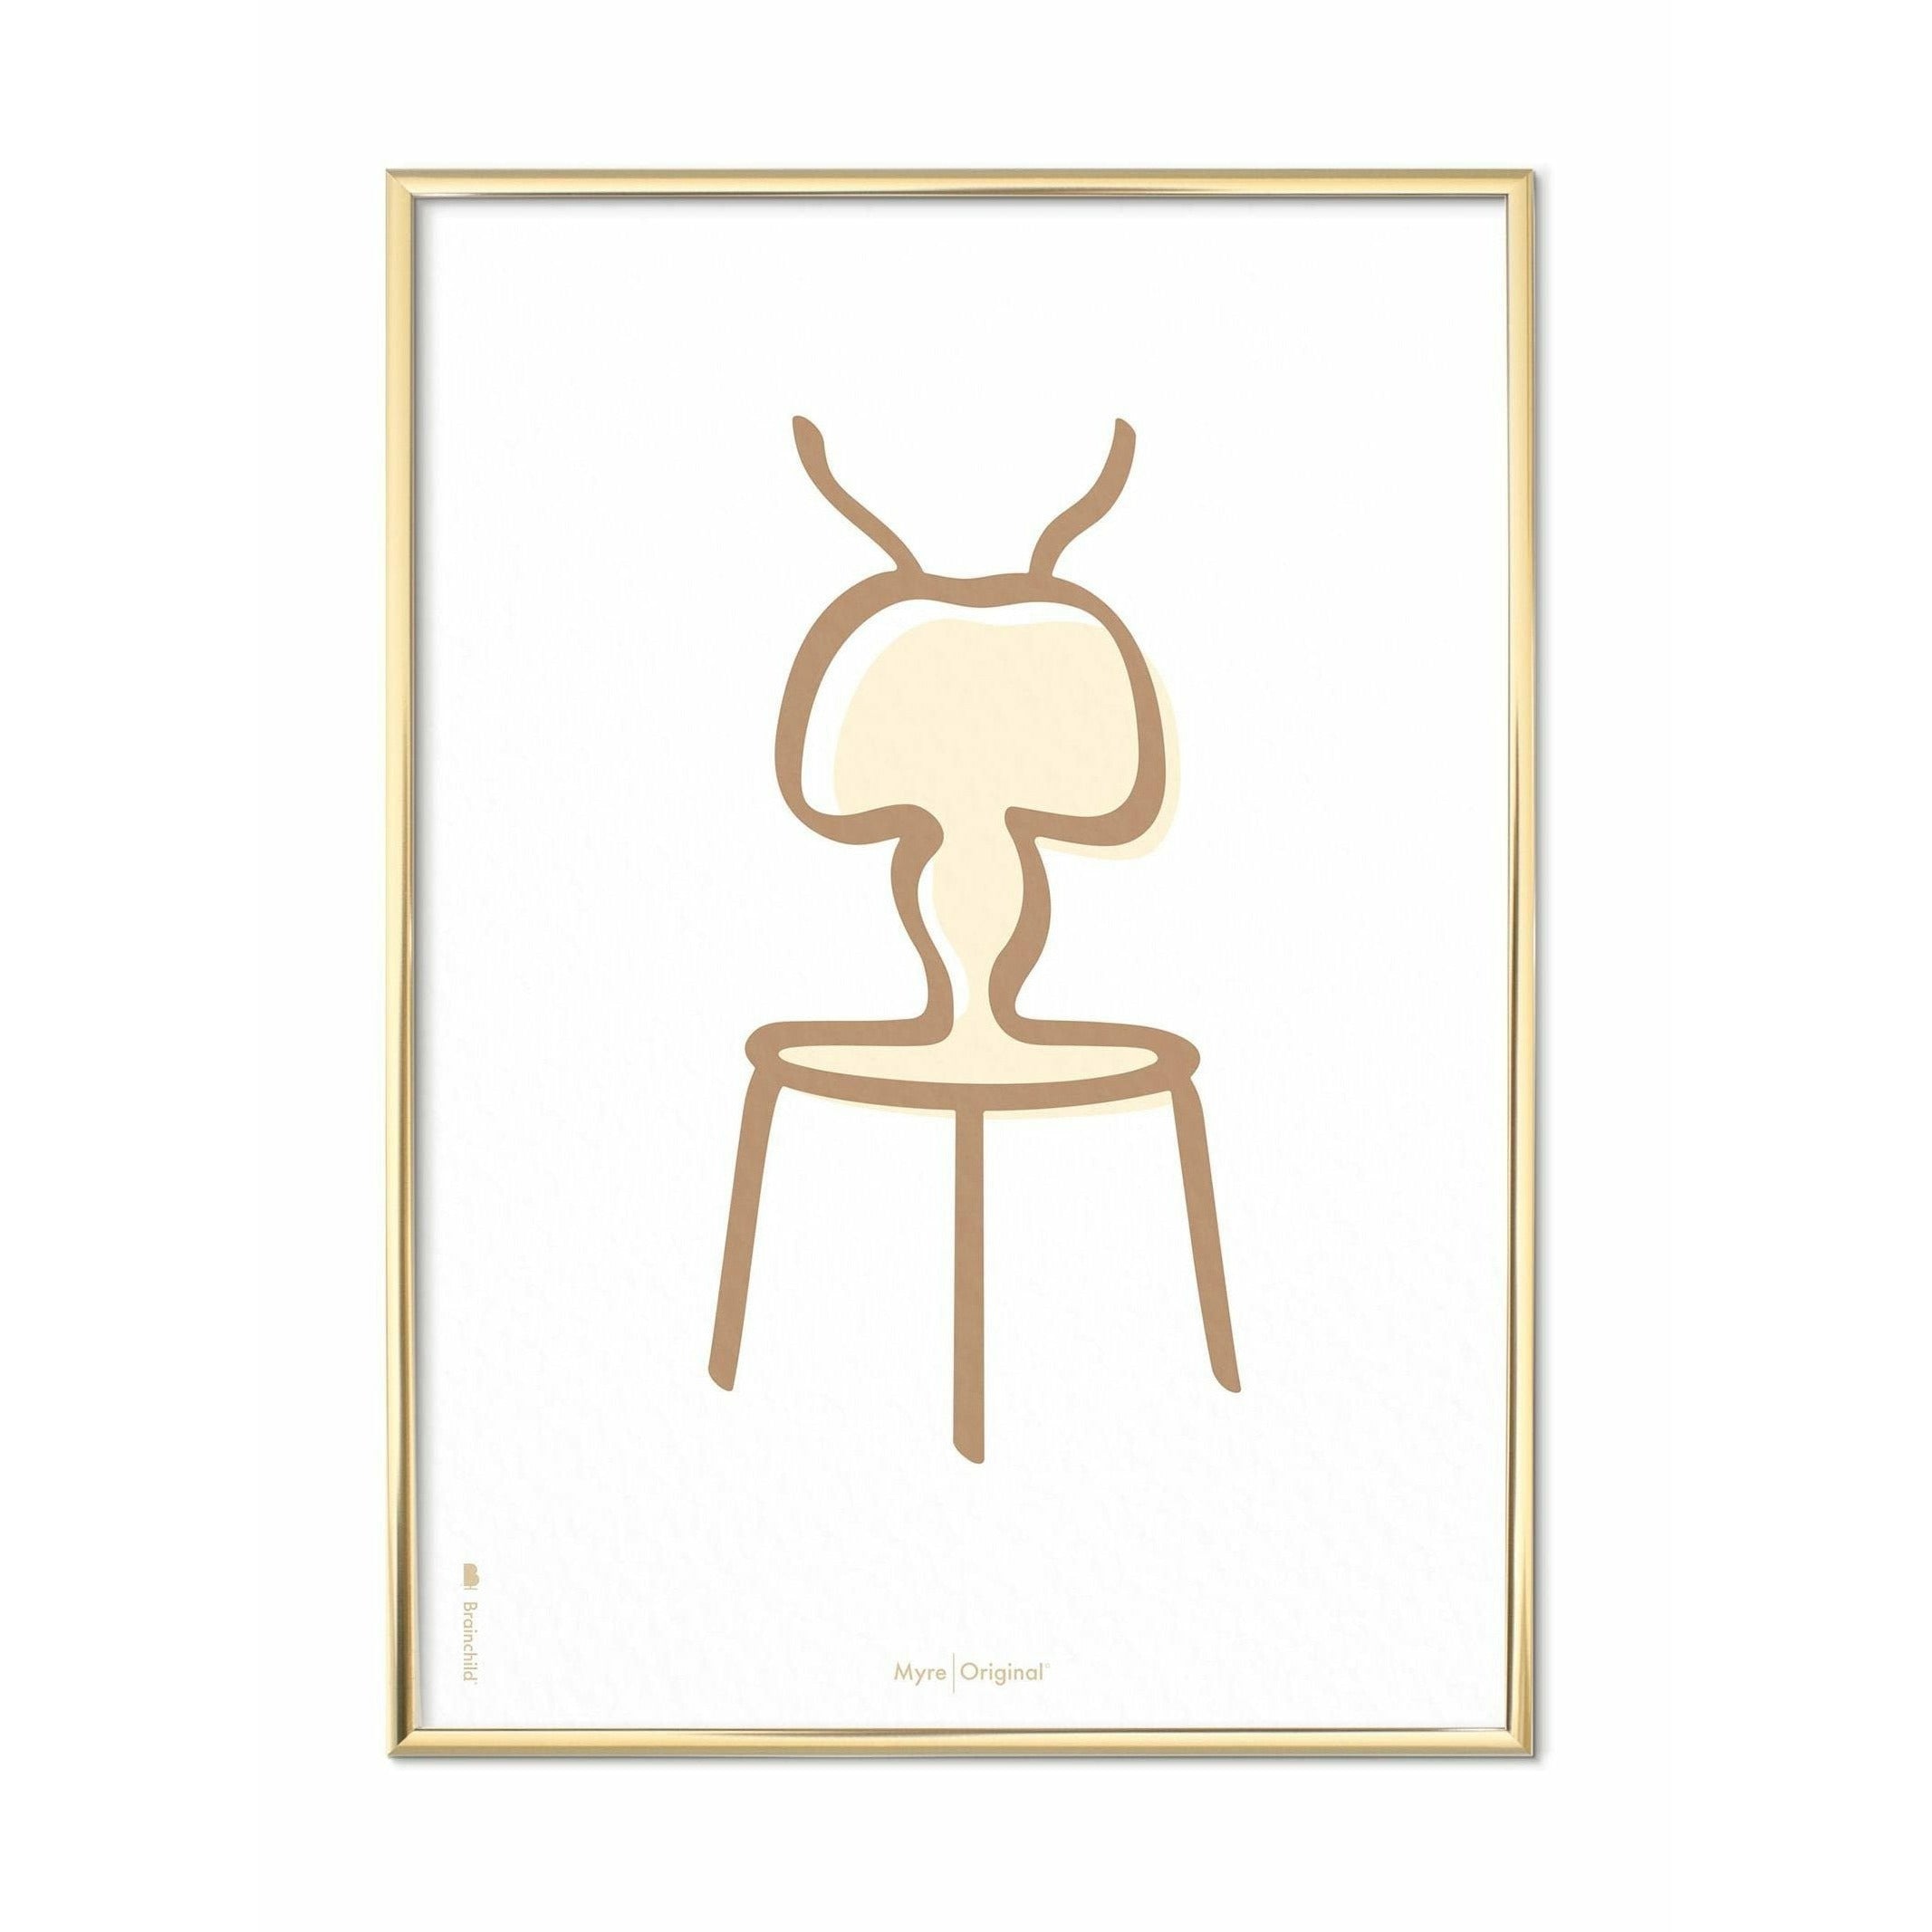 Plakát Ant Line Brainchild, mosazný barevný rám 30 x40 cm, bílé pozadí